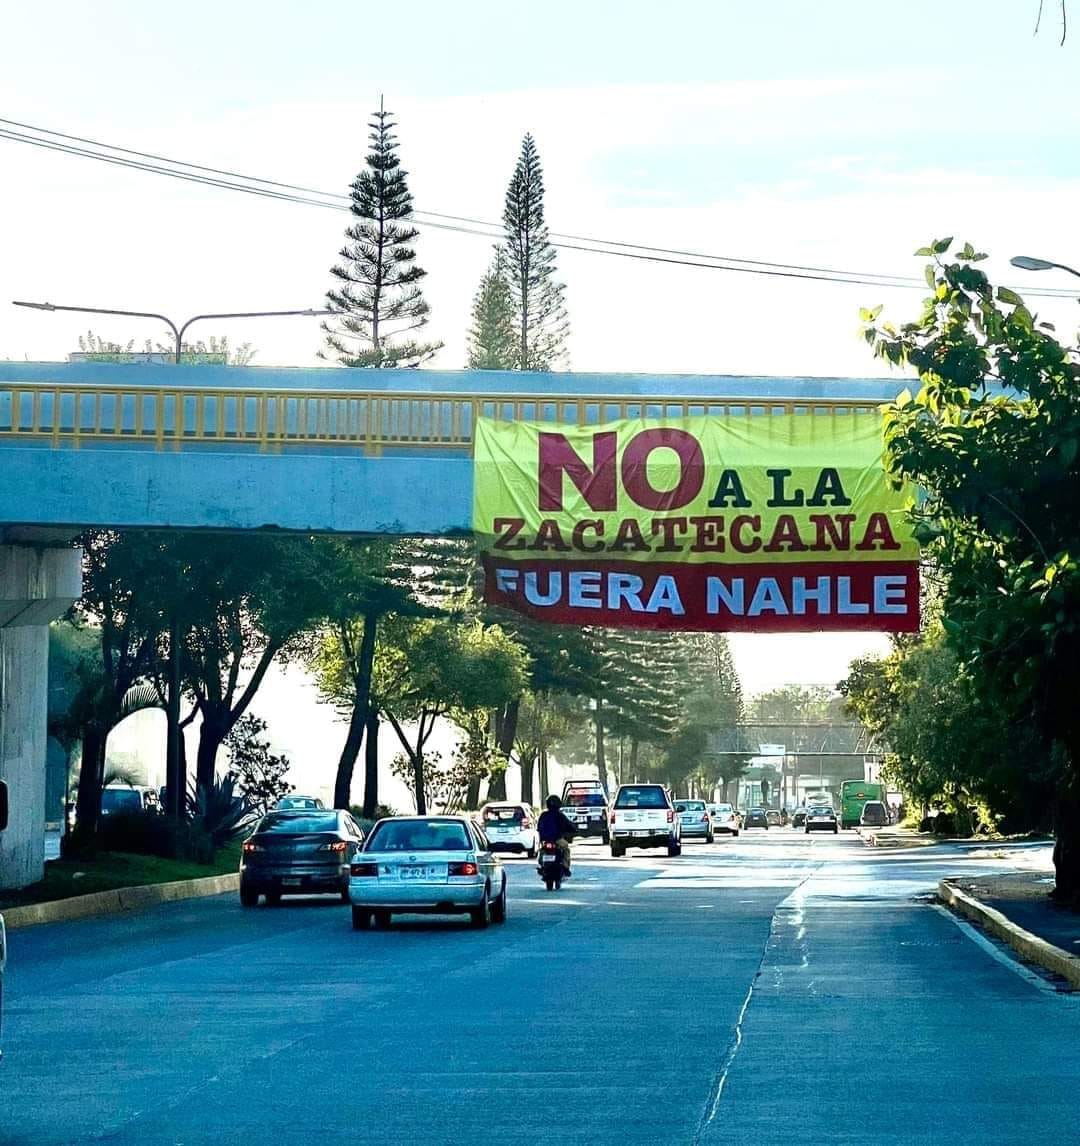 Comienza la guerra sucia; aparece propaganda contra Nahle en Xalapa